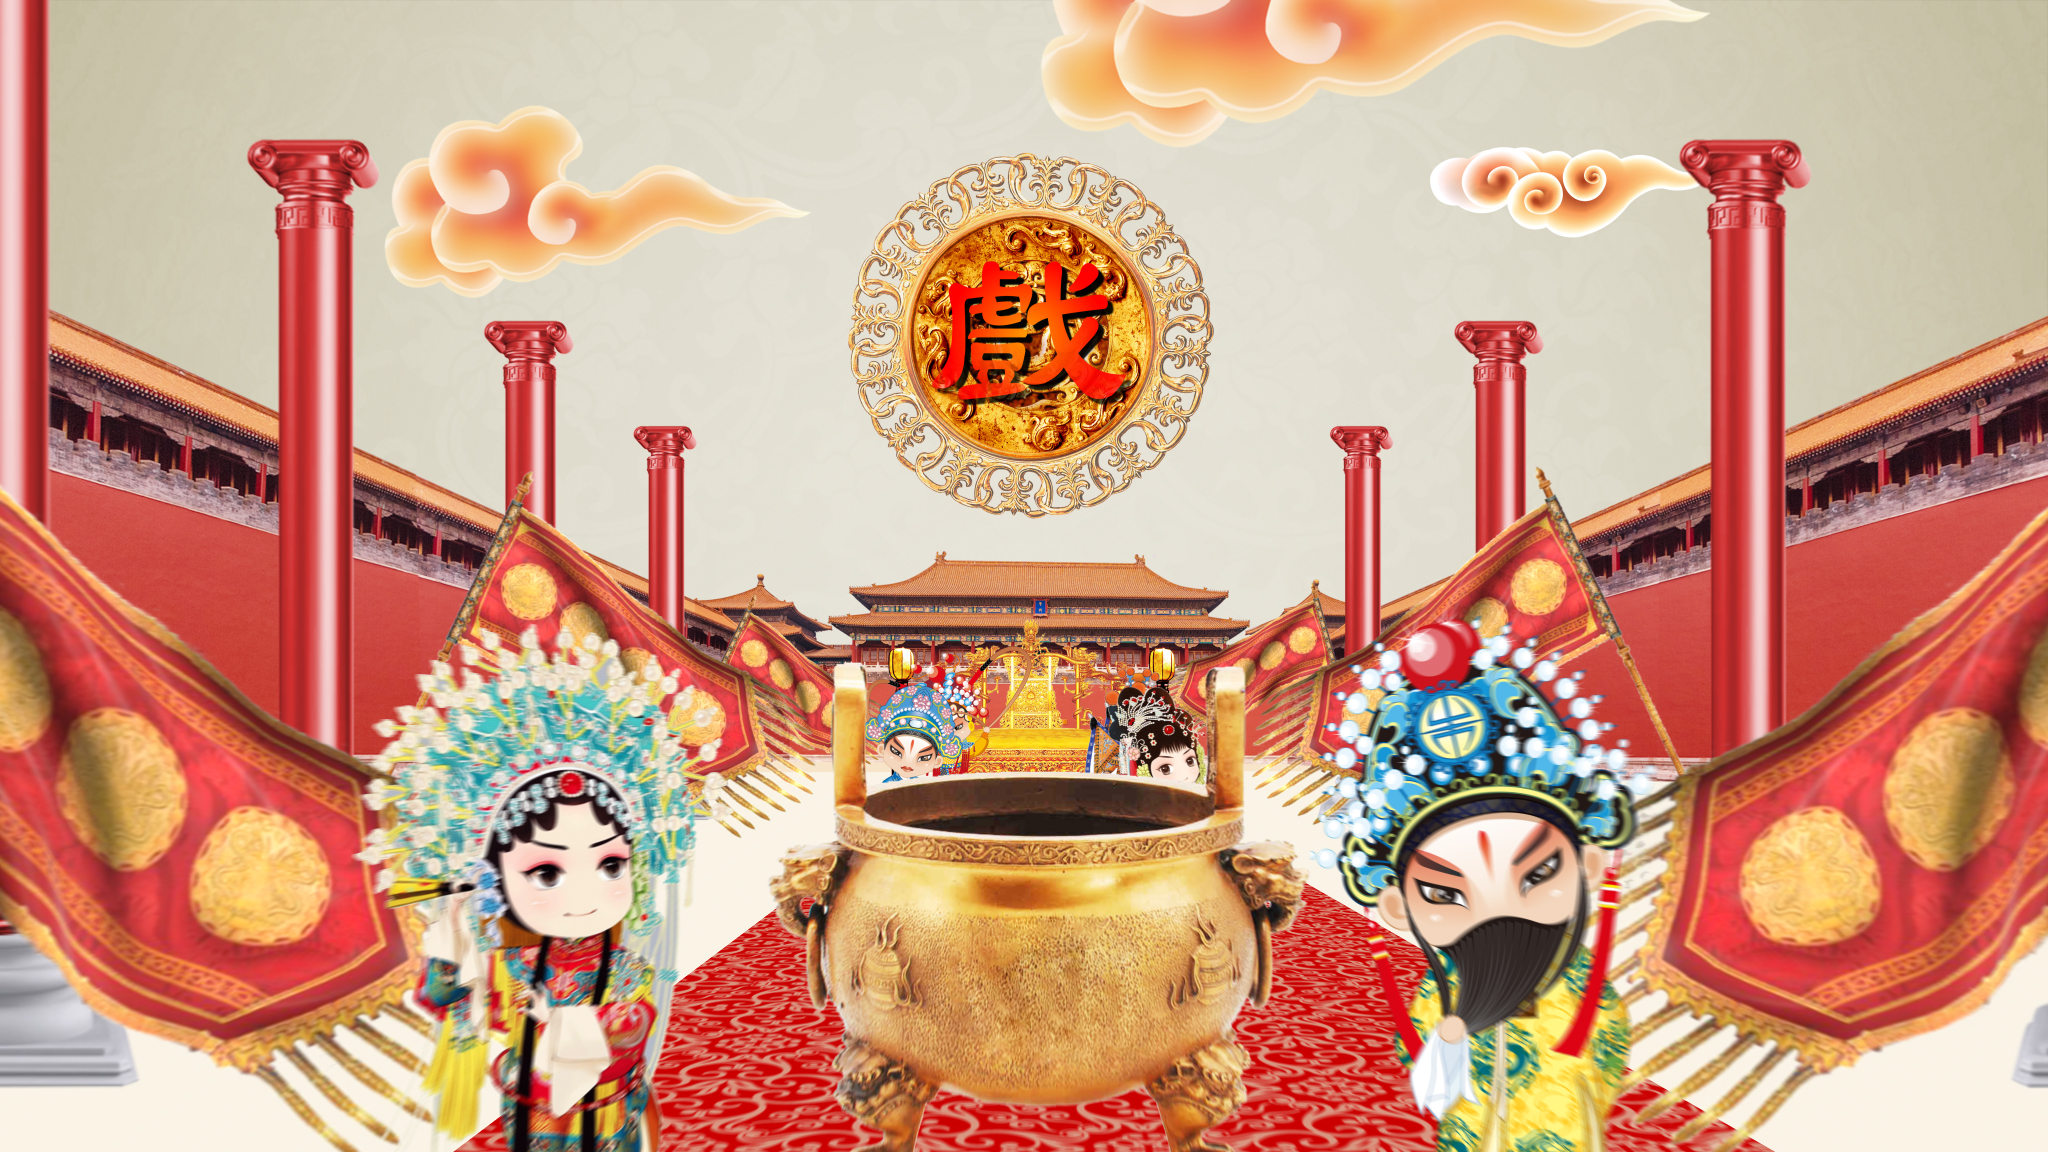 中国戏剧元素融入珠宝设计 古人李白打造现代艺术IP